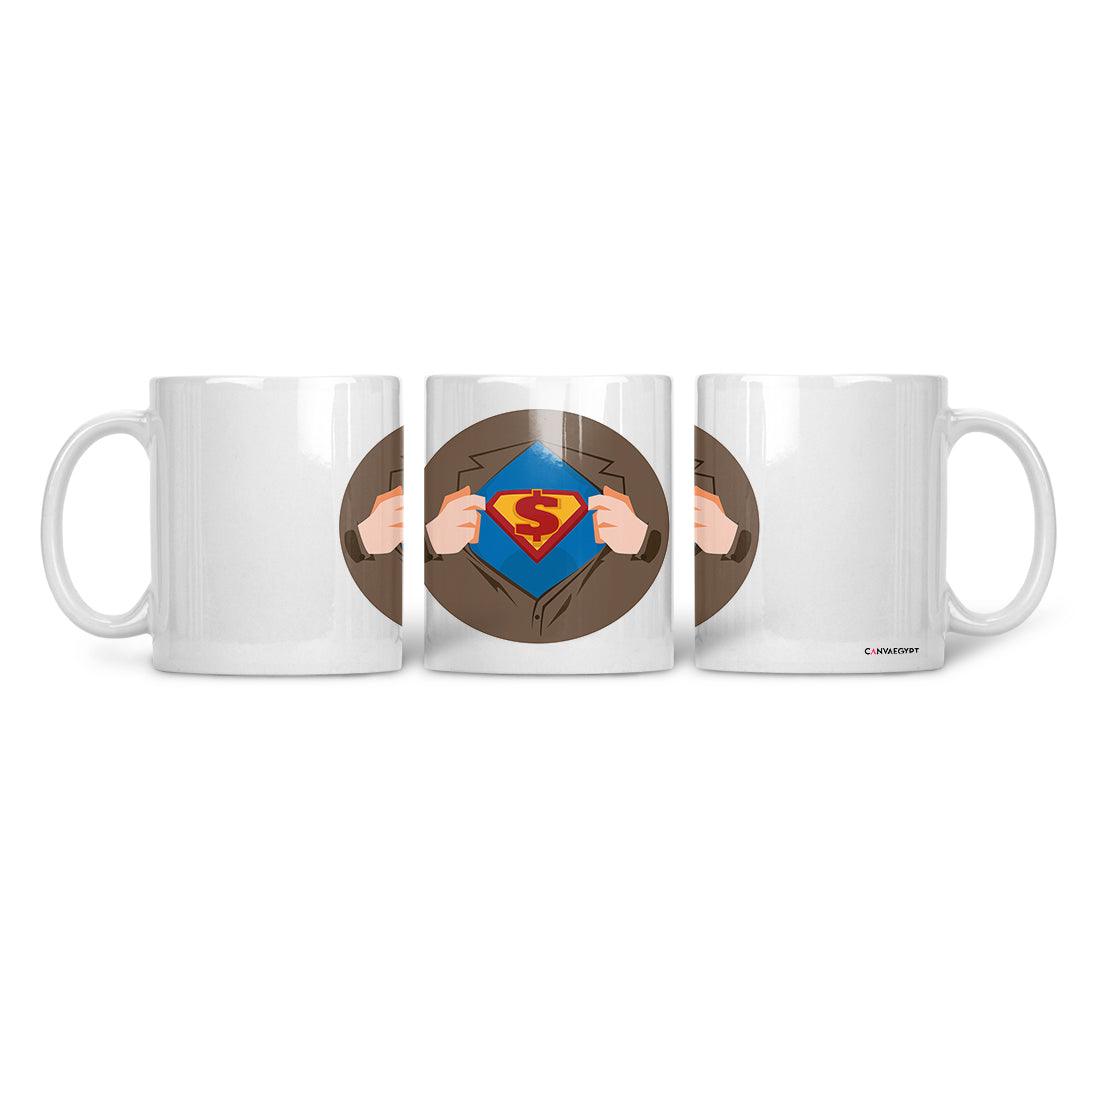 Ceramic Mug Superman - CANVAEGYPT